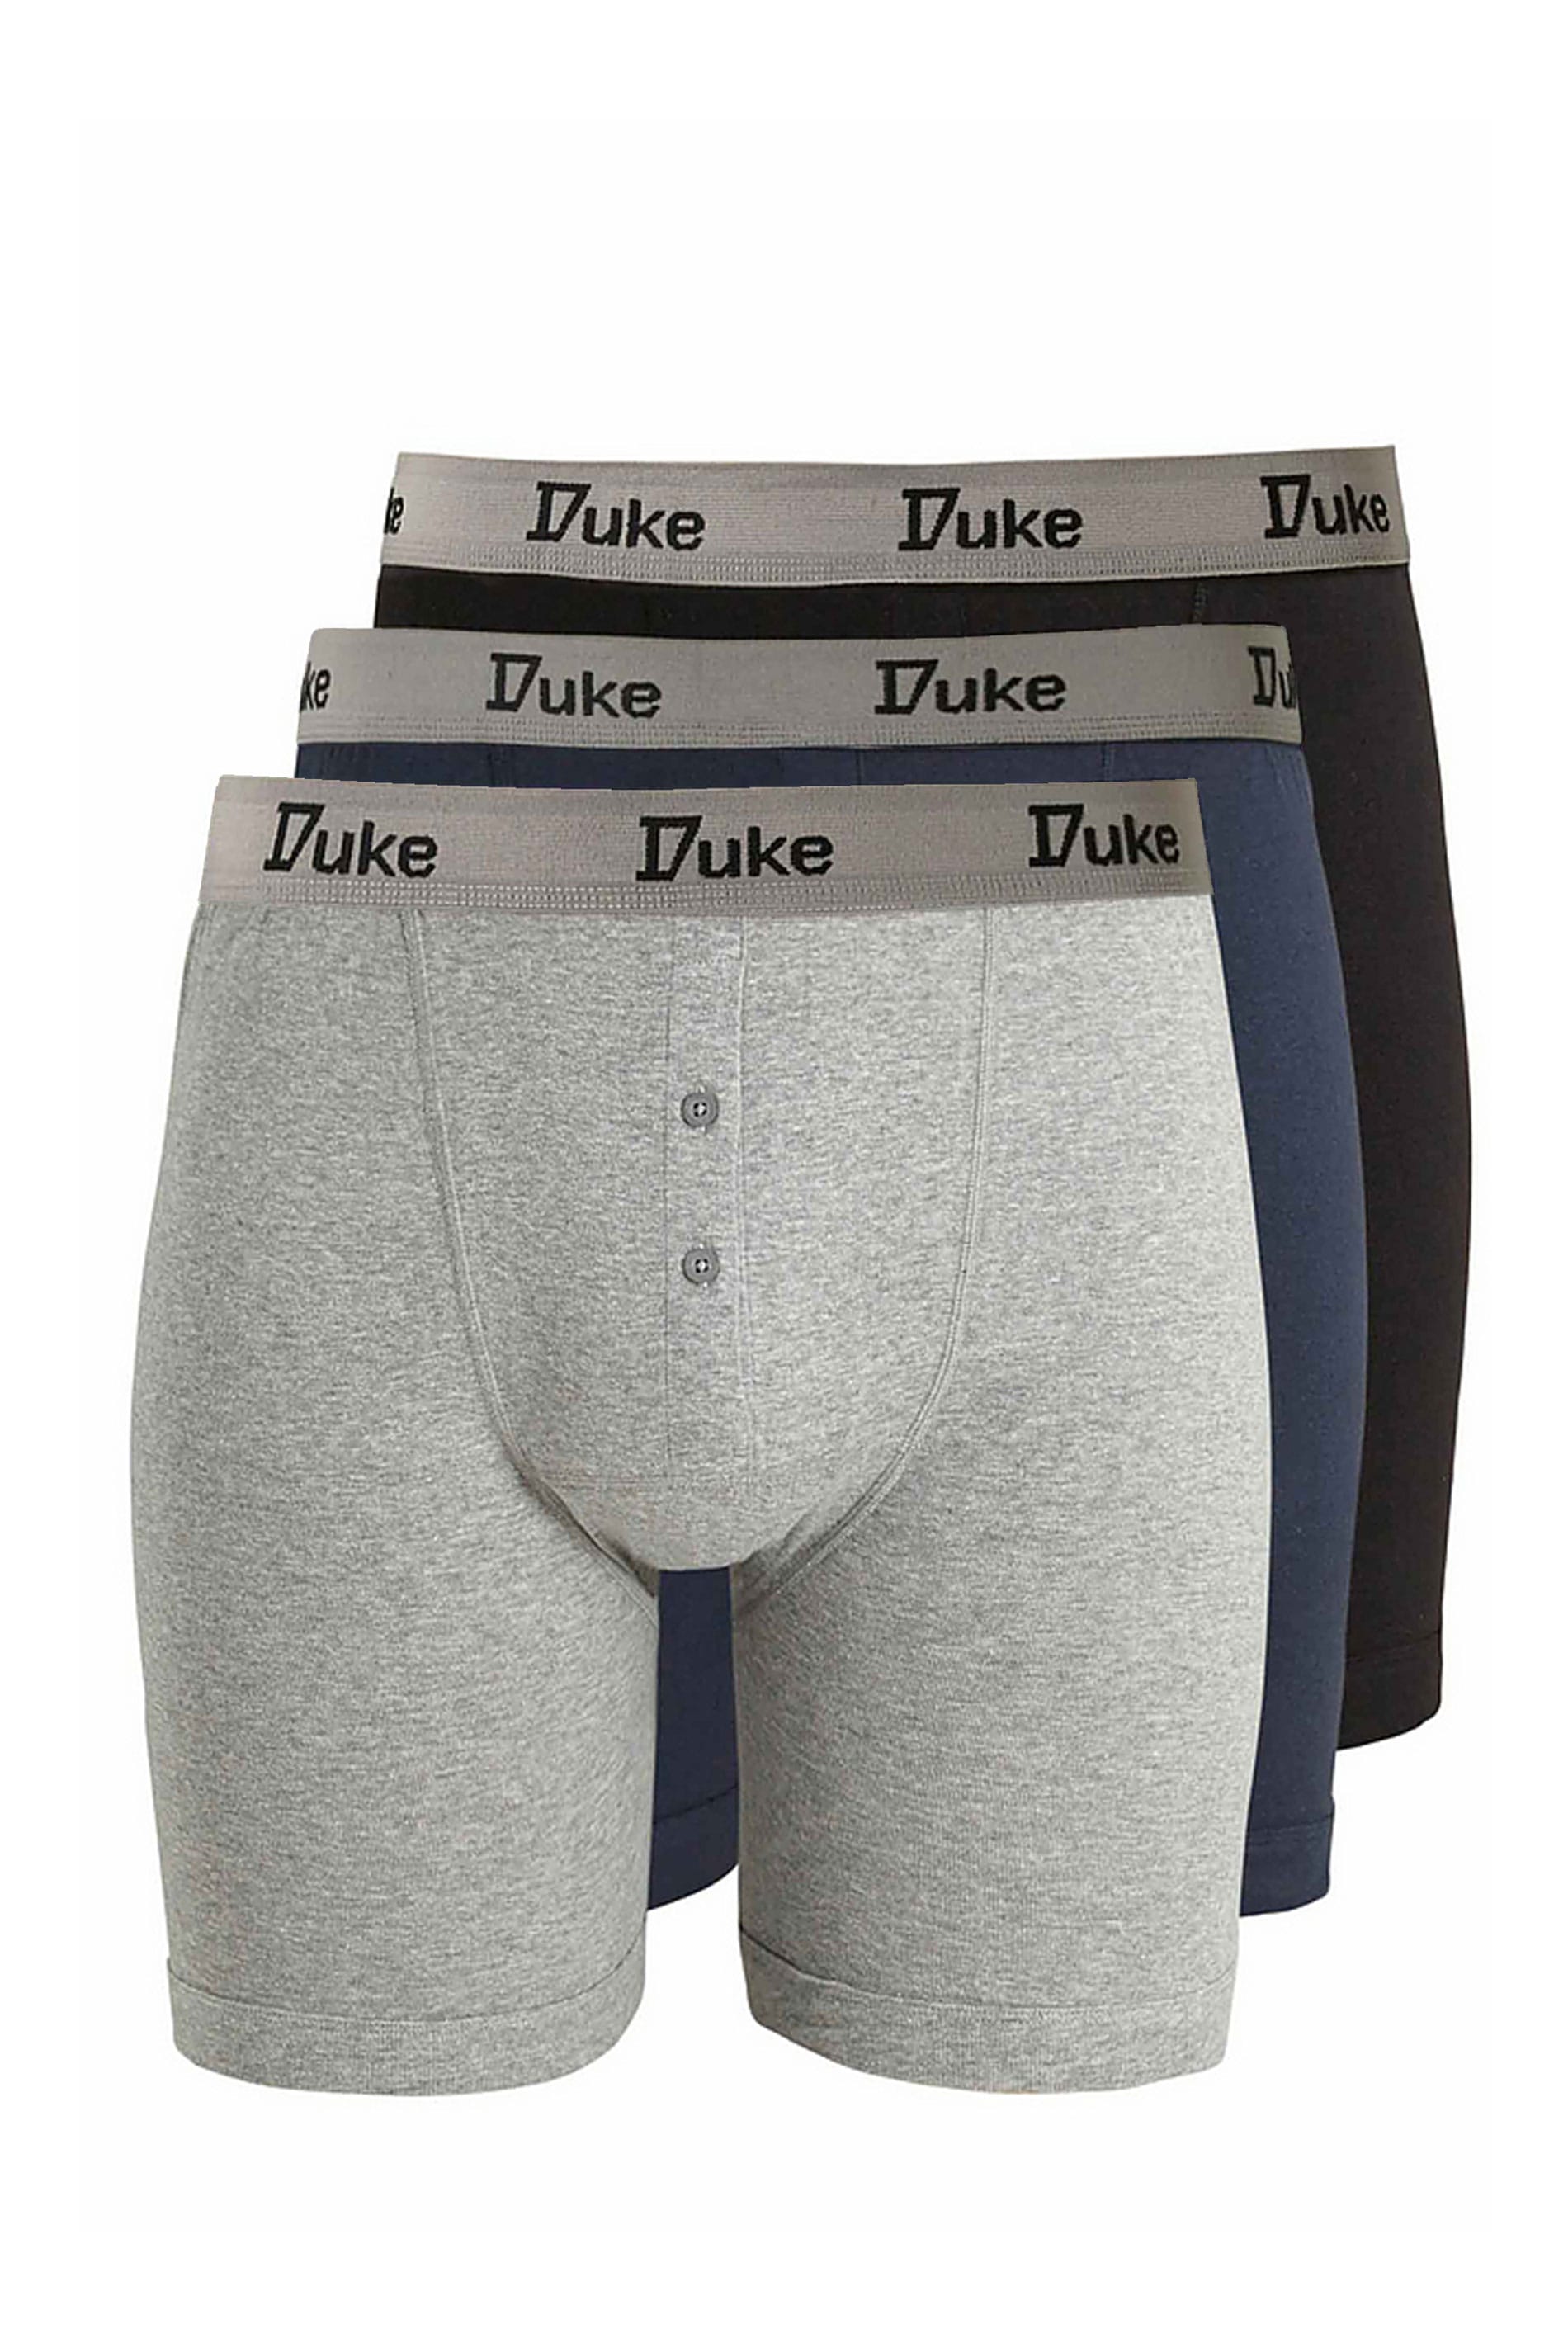 Duke Mens Boxer Short Underwear Pants New Pack of 3 